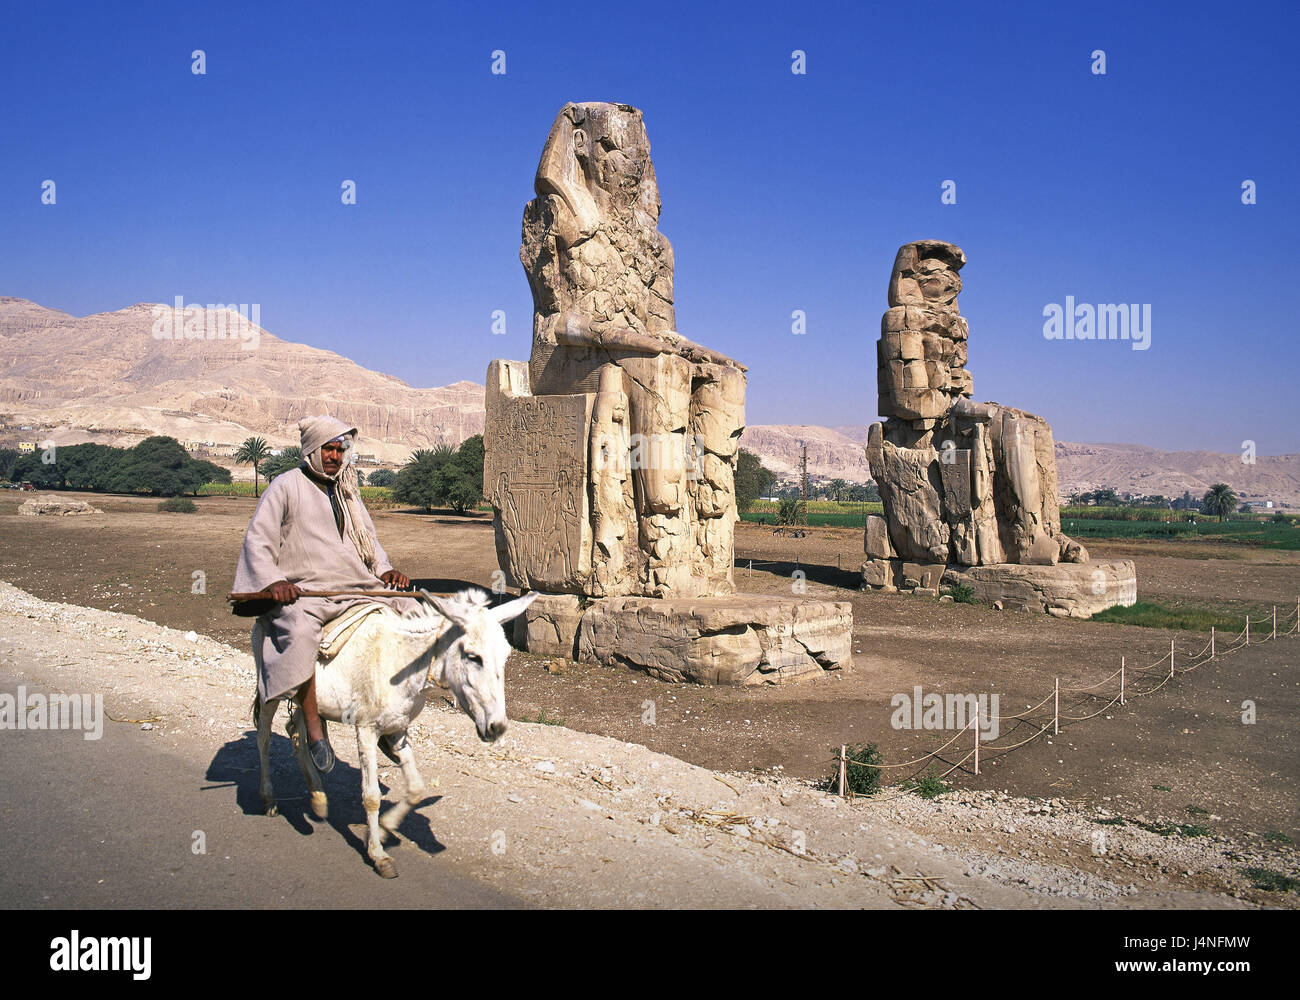 Egitto, Tebe, Memnon colossi, sanguina, Luxor, statue, caratteri, Memnon, statue giganti, Memnon colossi, incredibilmente, prepotentemente, sede dei caratteri, caratteri gigantesche, uomo, locale, cavallo, mulo, asino, luogo di interesse, arte, cultura, storicamente, storia, viaggi Foto Stock